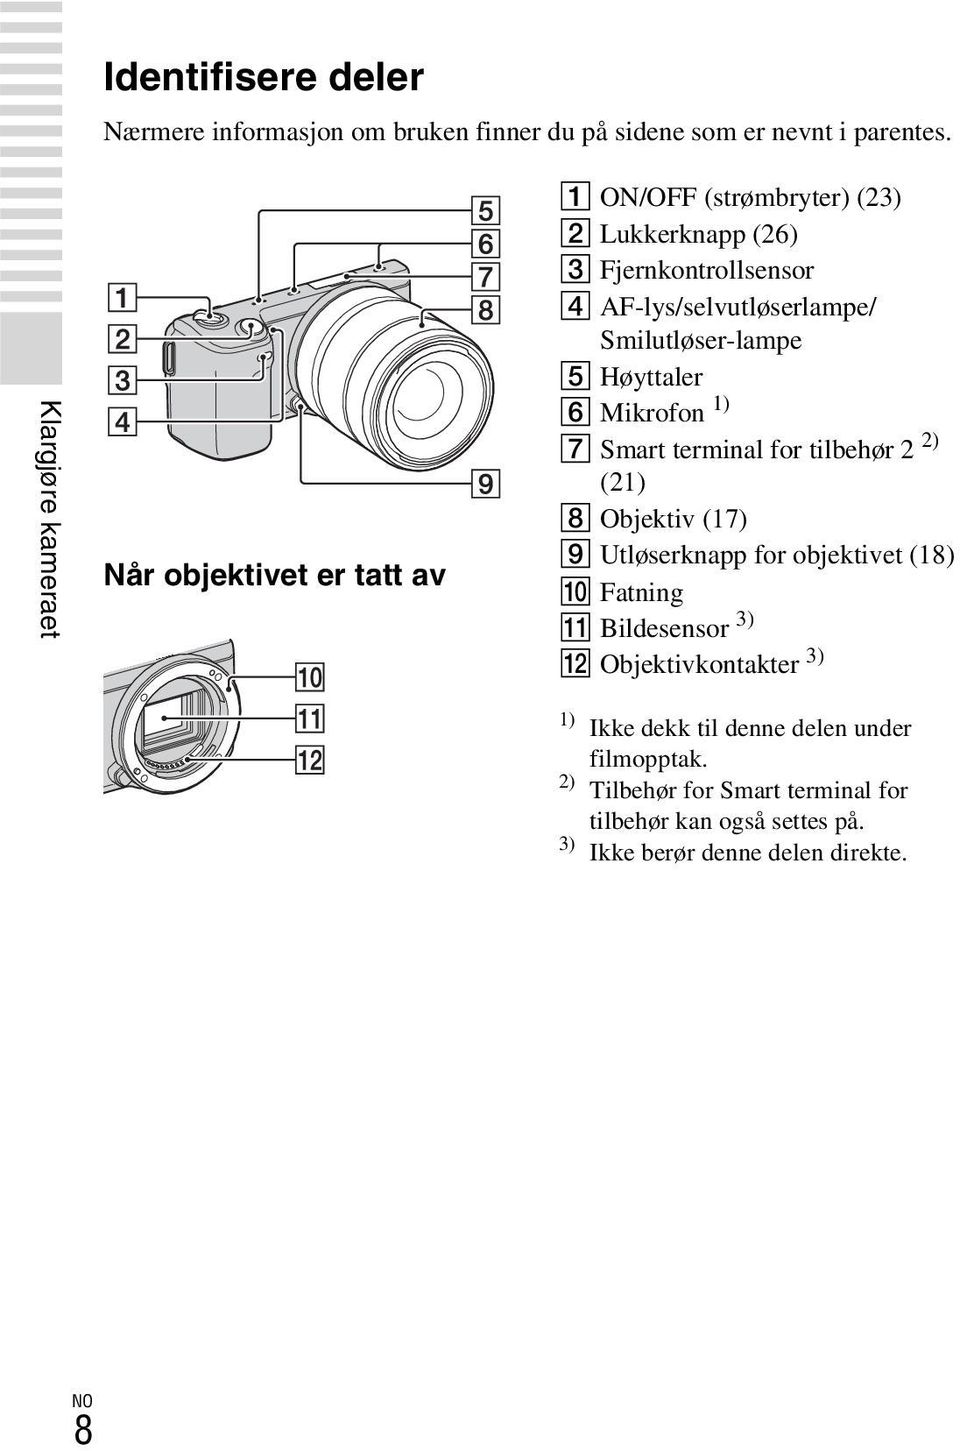 Smilutløser-lampe E Høyttaler F Mikrofon 1) G Smart terminal for tilbehør 2 2) (21) H Objektiv (17) I Utløserknapp for objektivet (18) J